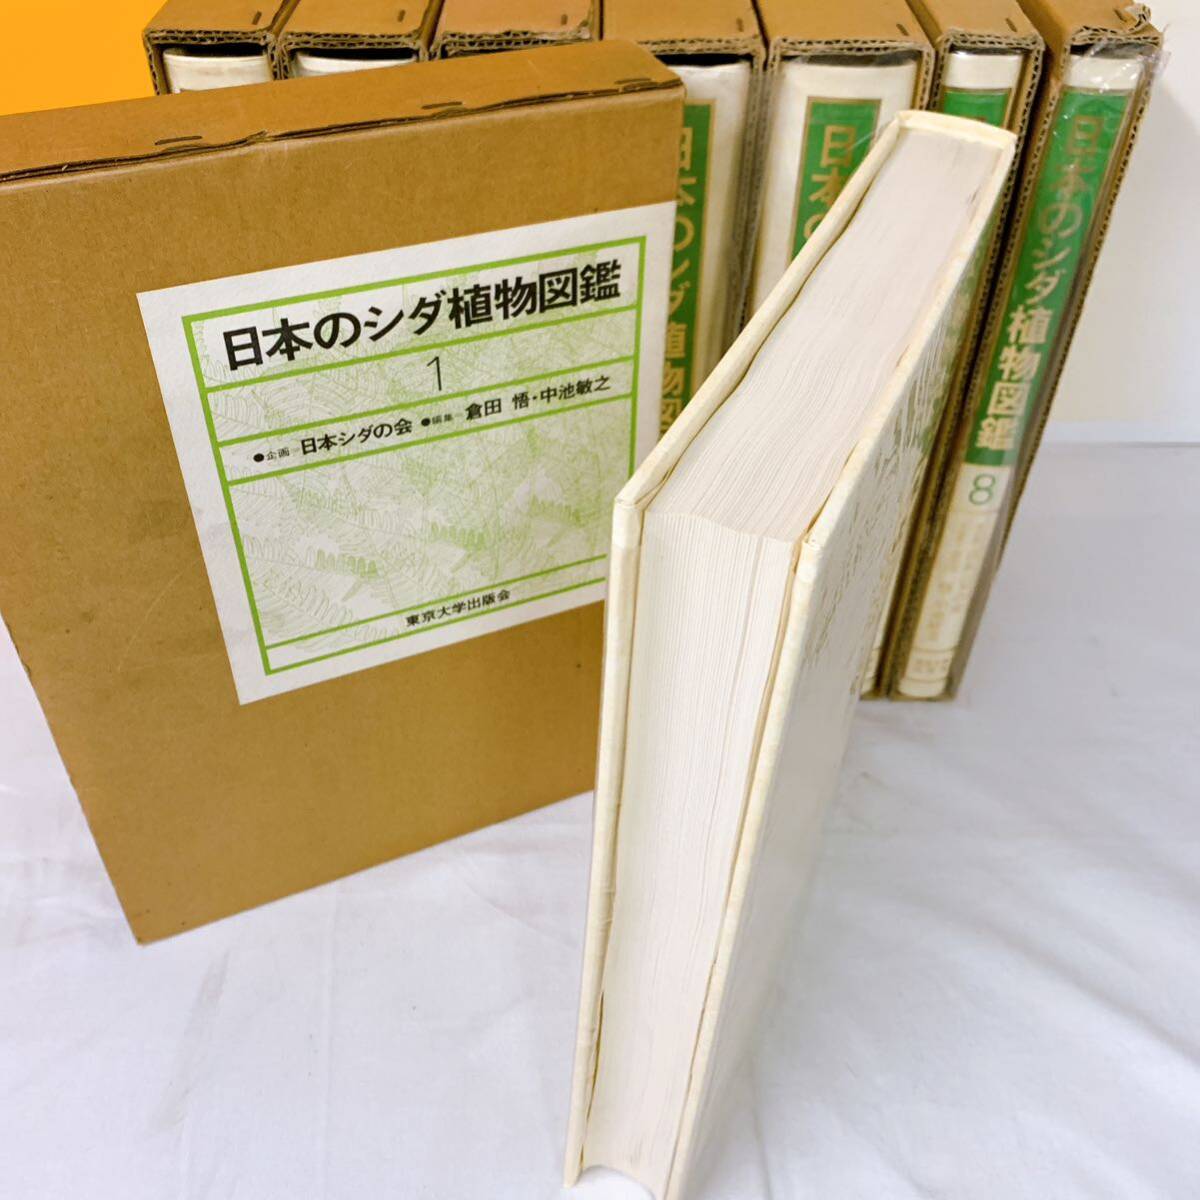 B-T3/7 日本のシダ植物図鑑 全８巻 東京大学出版会 初版の画像3